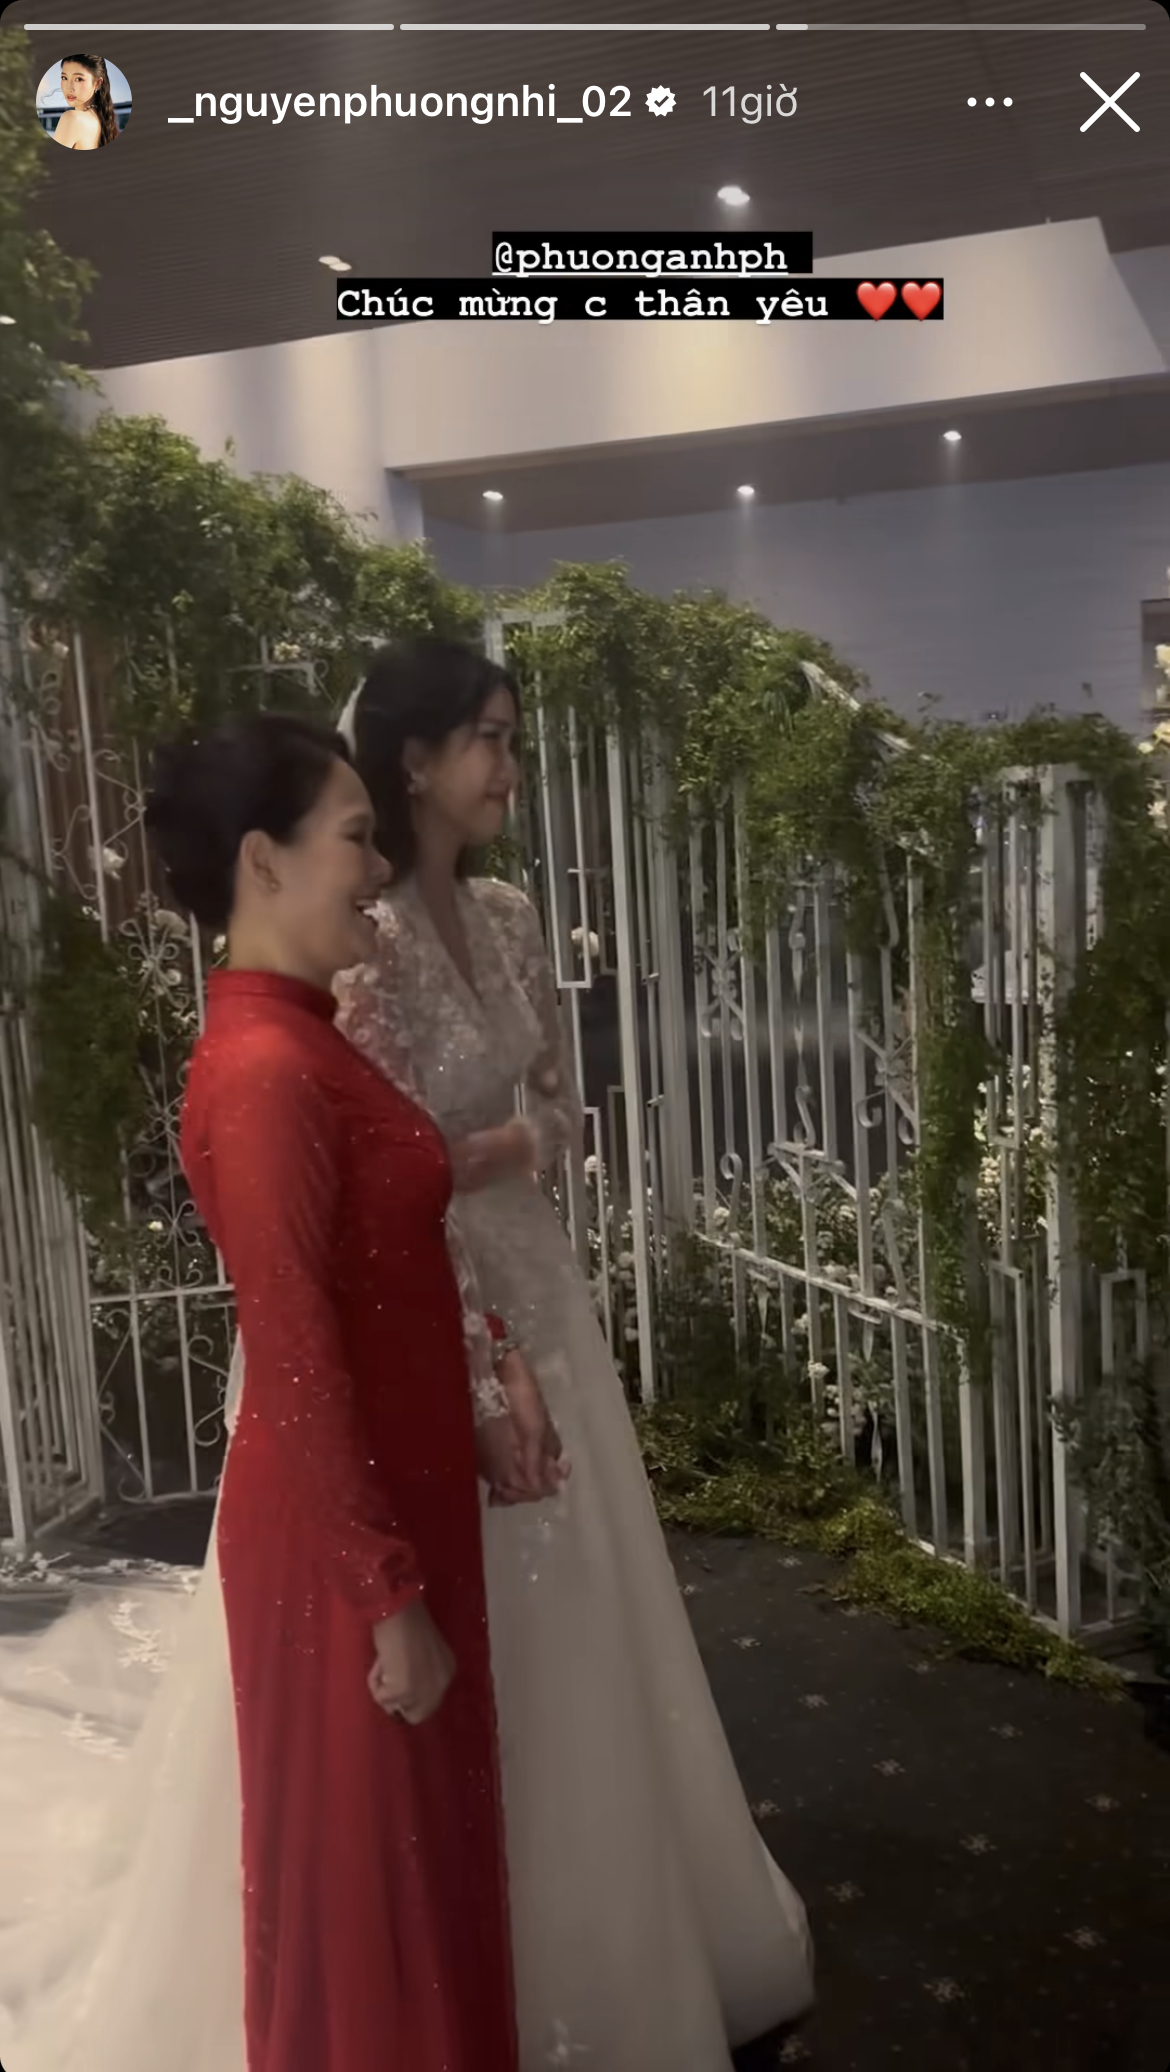 Tiệc tối hôn lễ Á hậu Phương Anh: Cô dâu rơi nước mắt khi vào lễ đường, lộ 1 chi tiết cực tinh tế-3